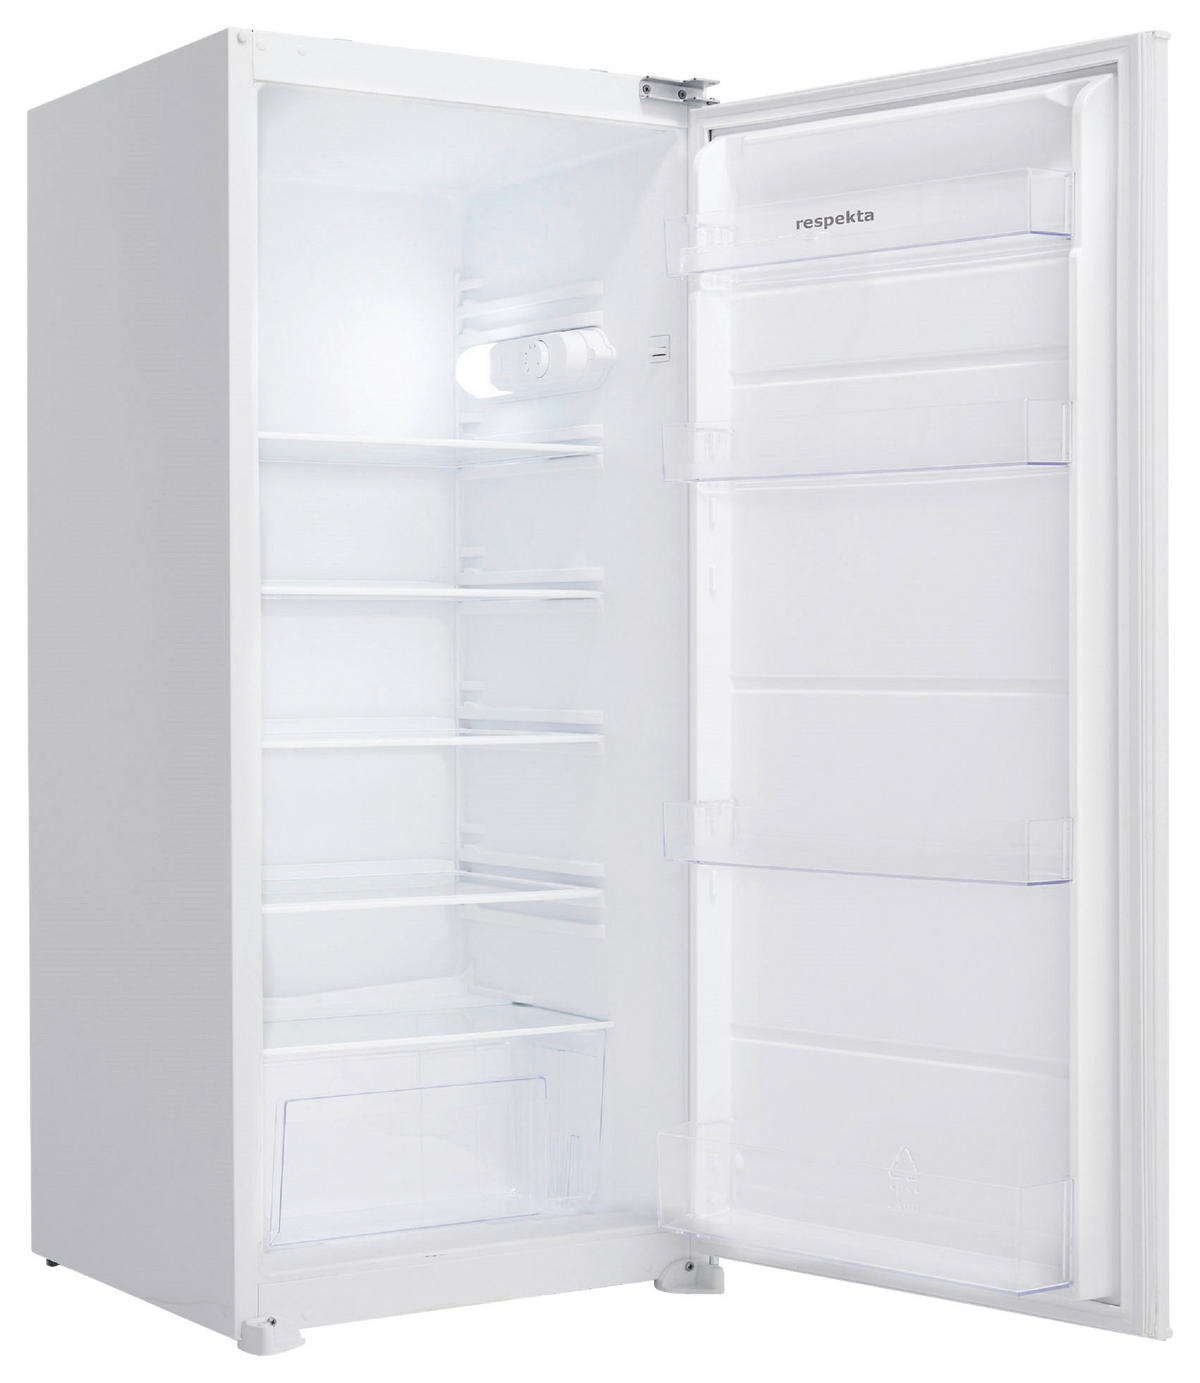 Respekta KS122.0 Einbau Kühlschrank ohne Gefrierfach, Nischenhöhe